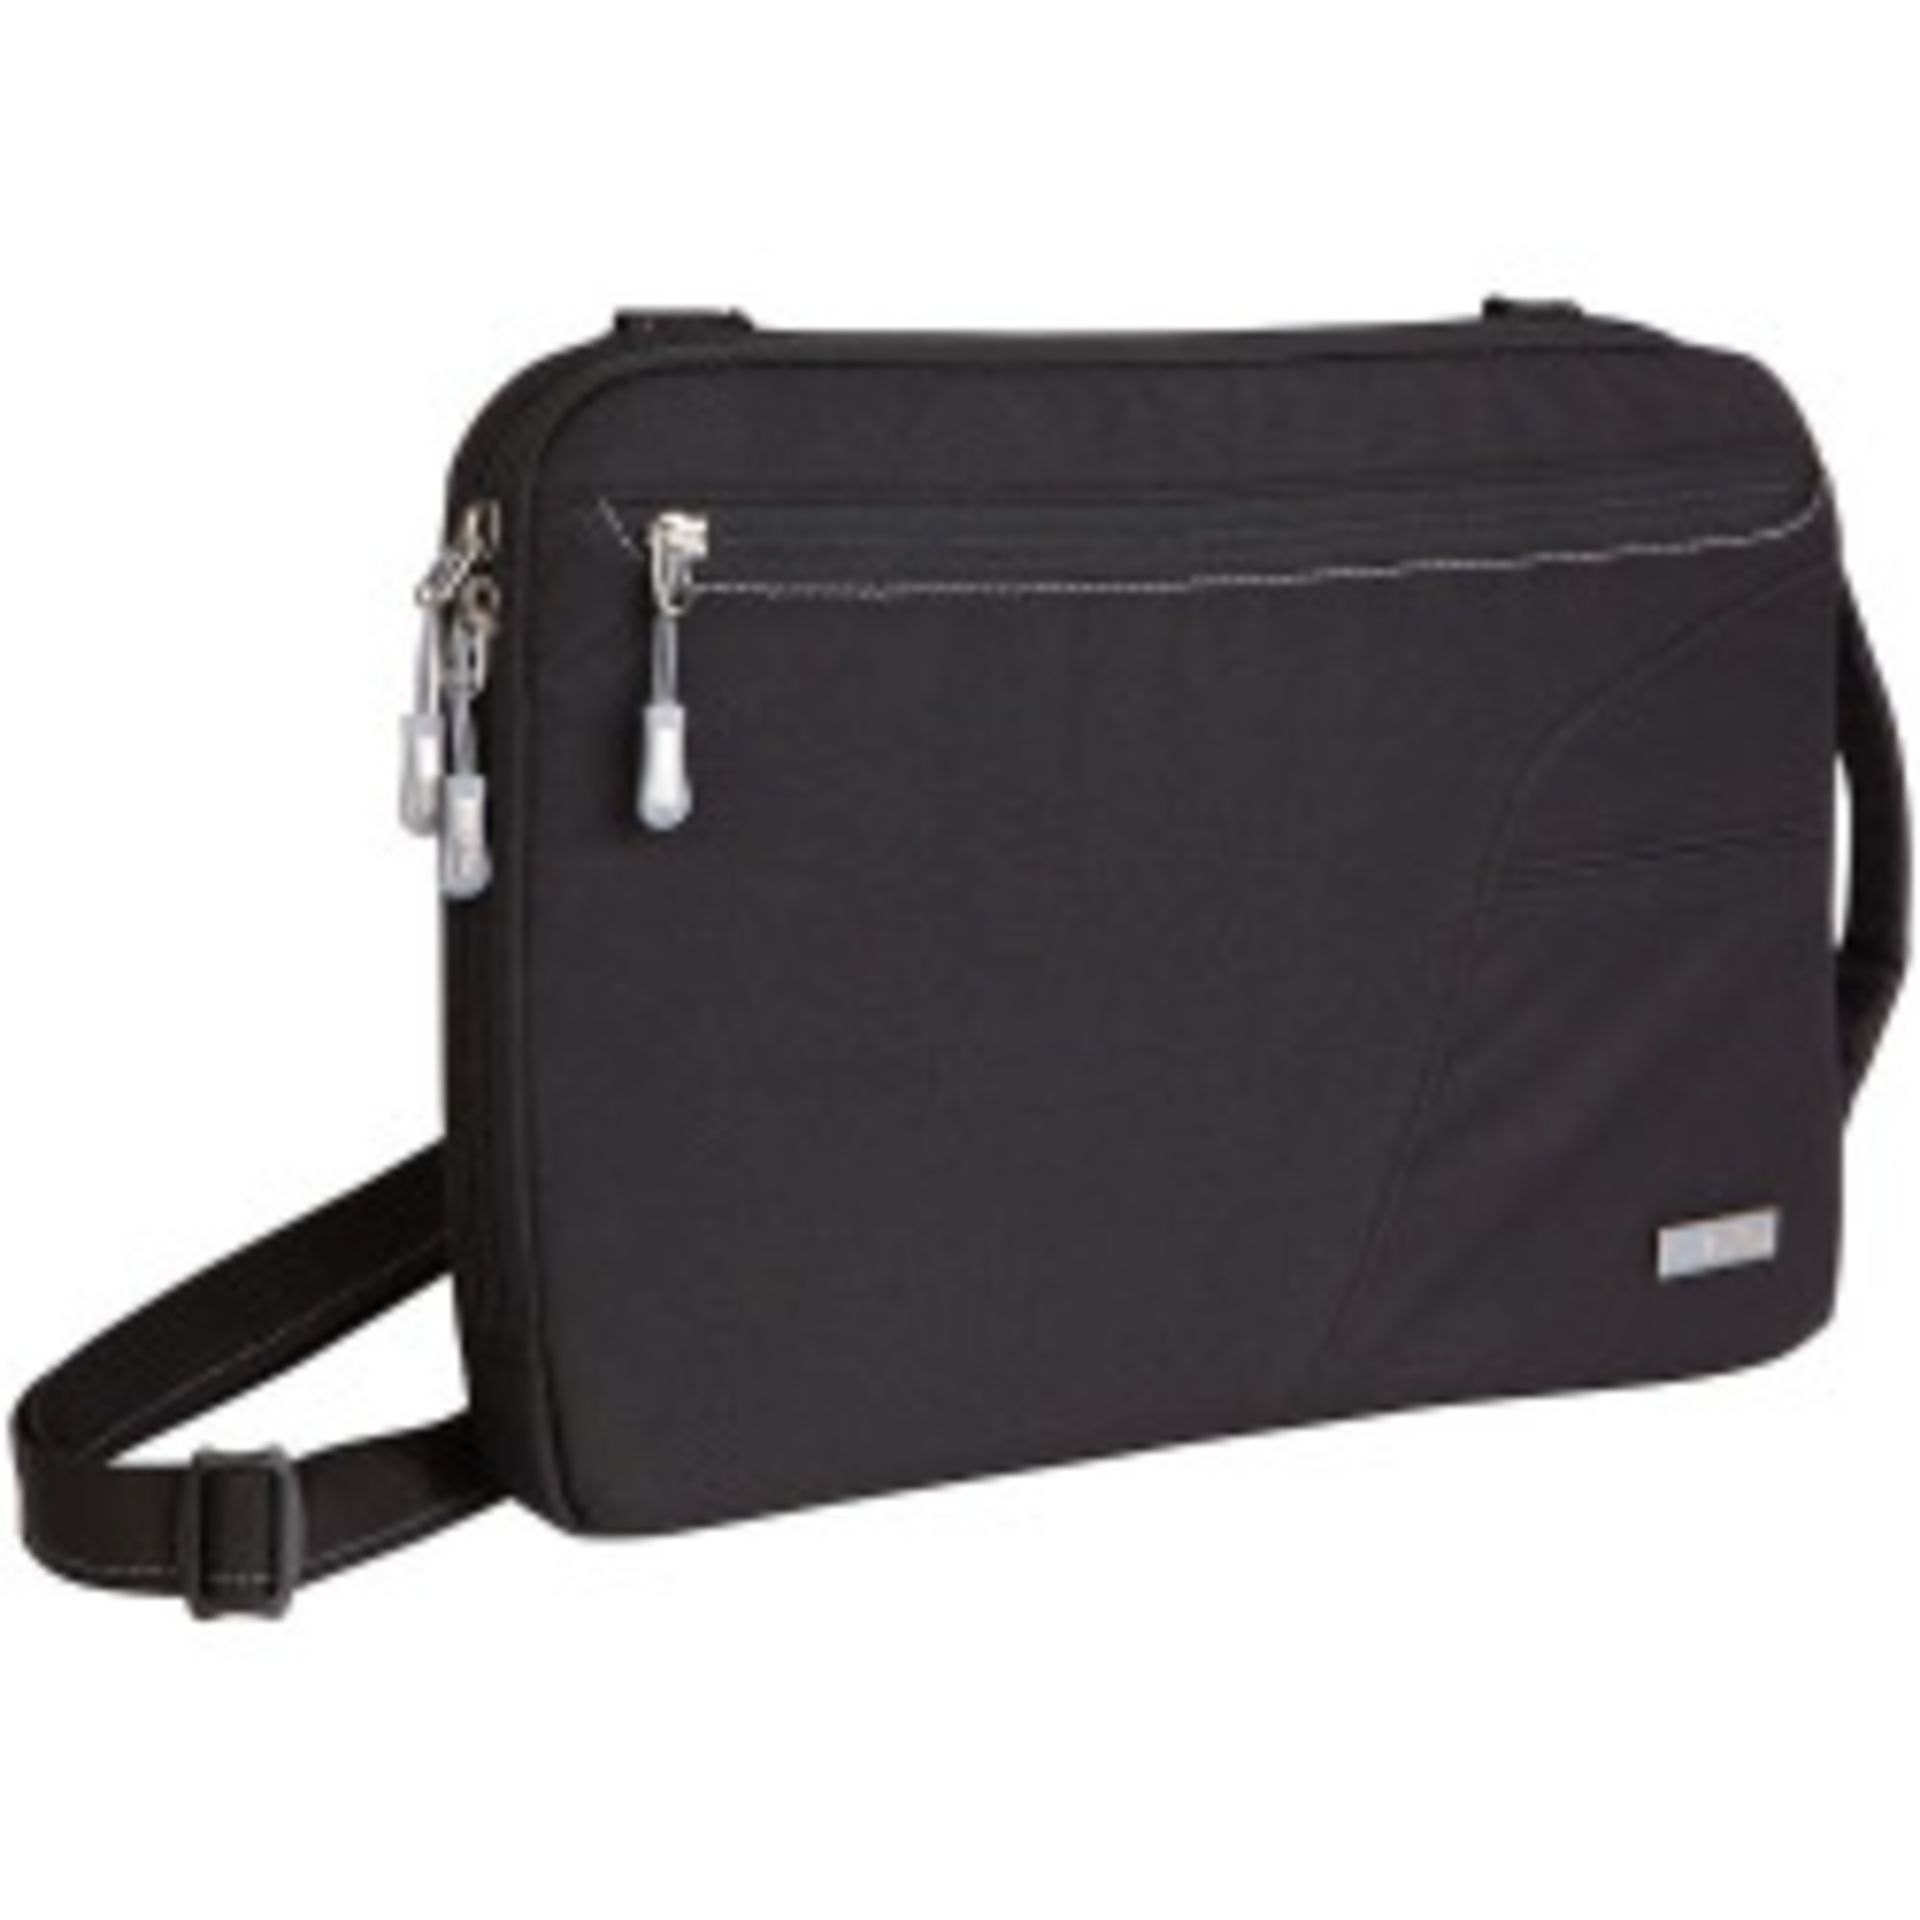 V Brand New STM Blazer Padded Sleeve - Bag For Laptops And Tablets 11" Black With Removable Shoulder